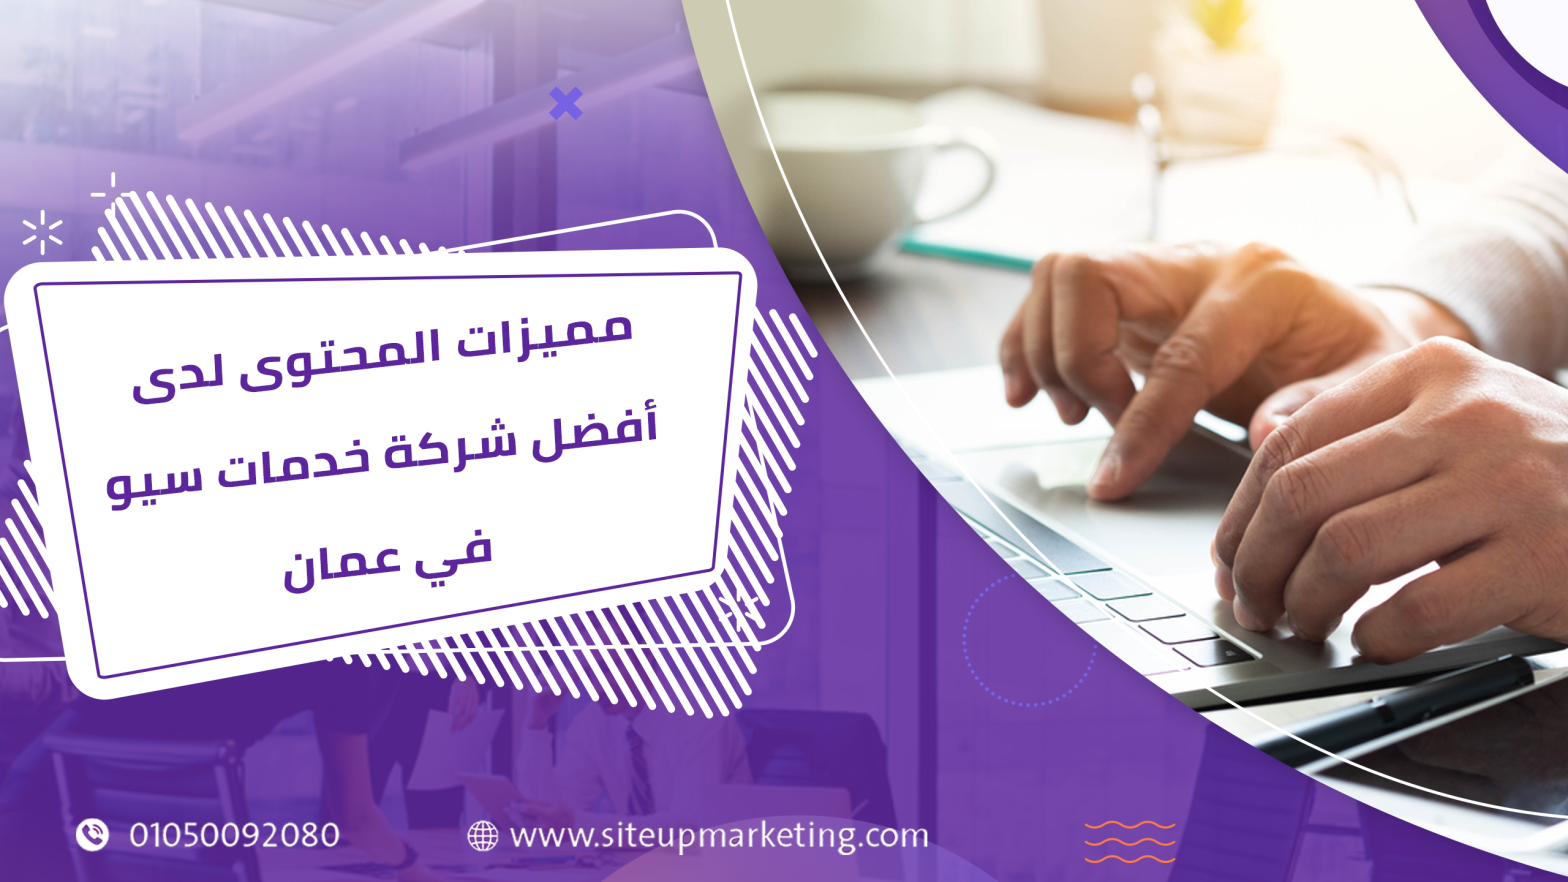 مميزات المحتوى لدى أفضل شركة خدمات سيو في عمان